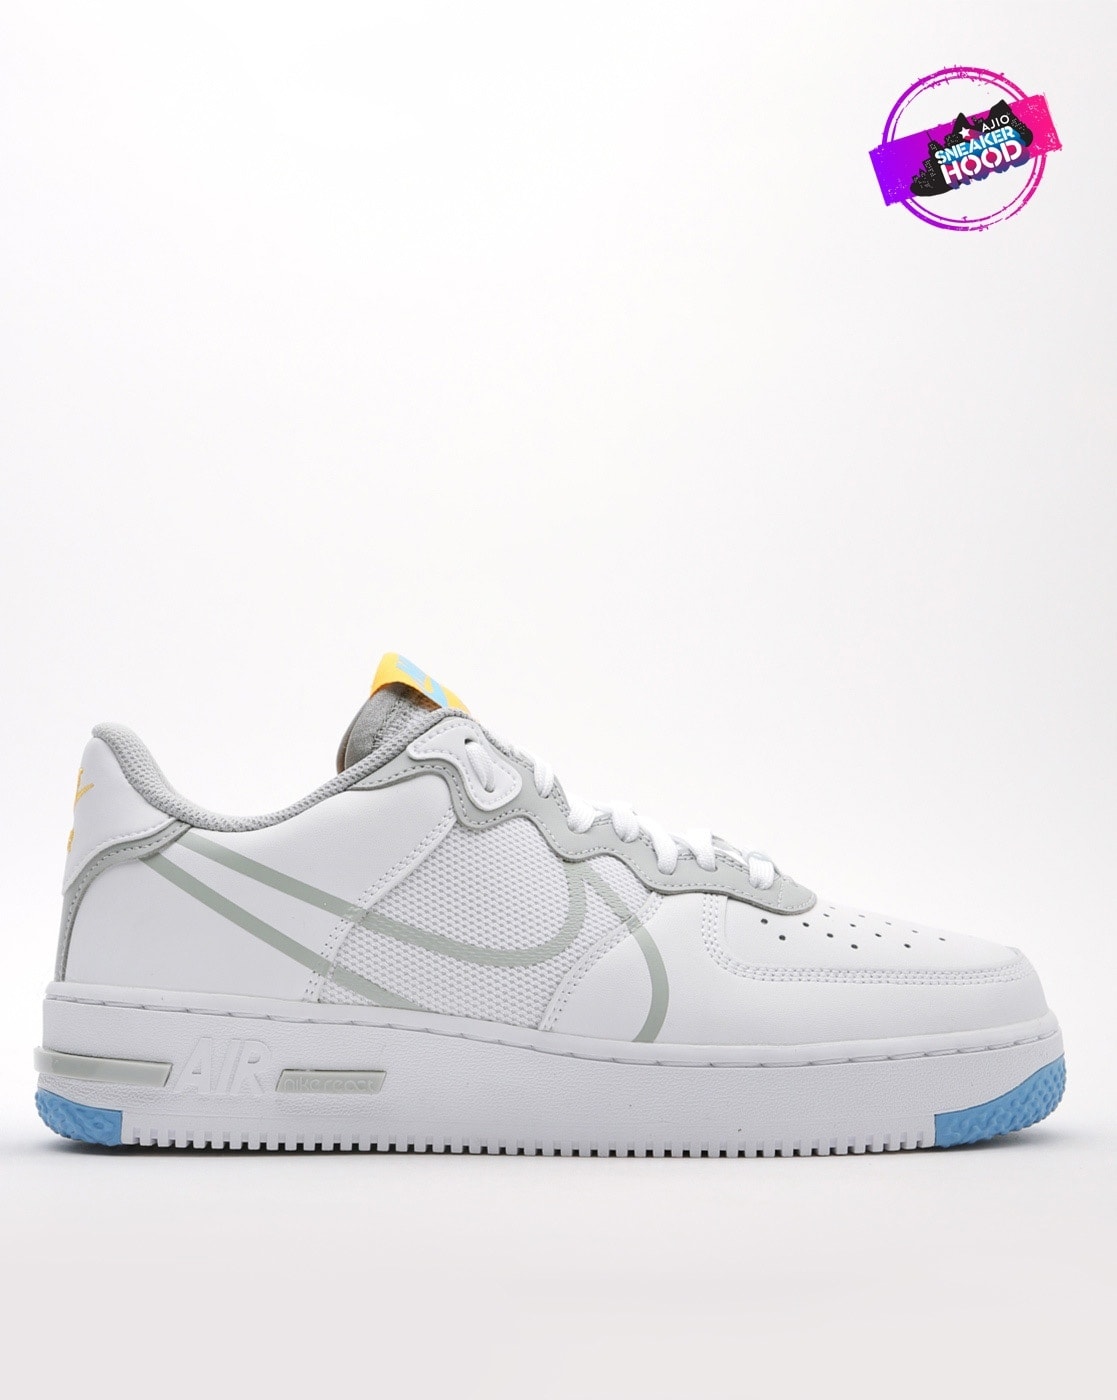 Nike Men's Air Force 1 2012 Hi-Top Basketball Sneaker Shoes